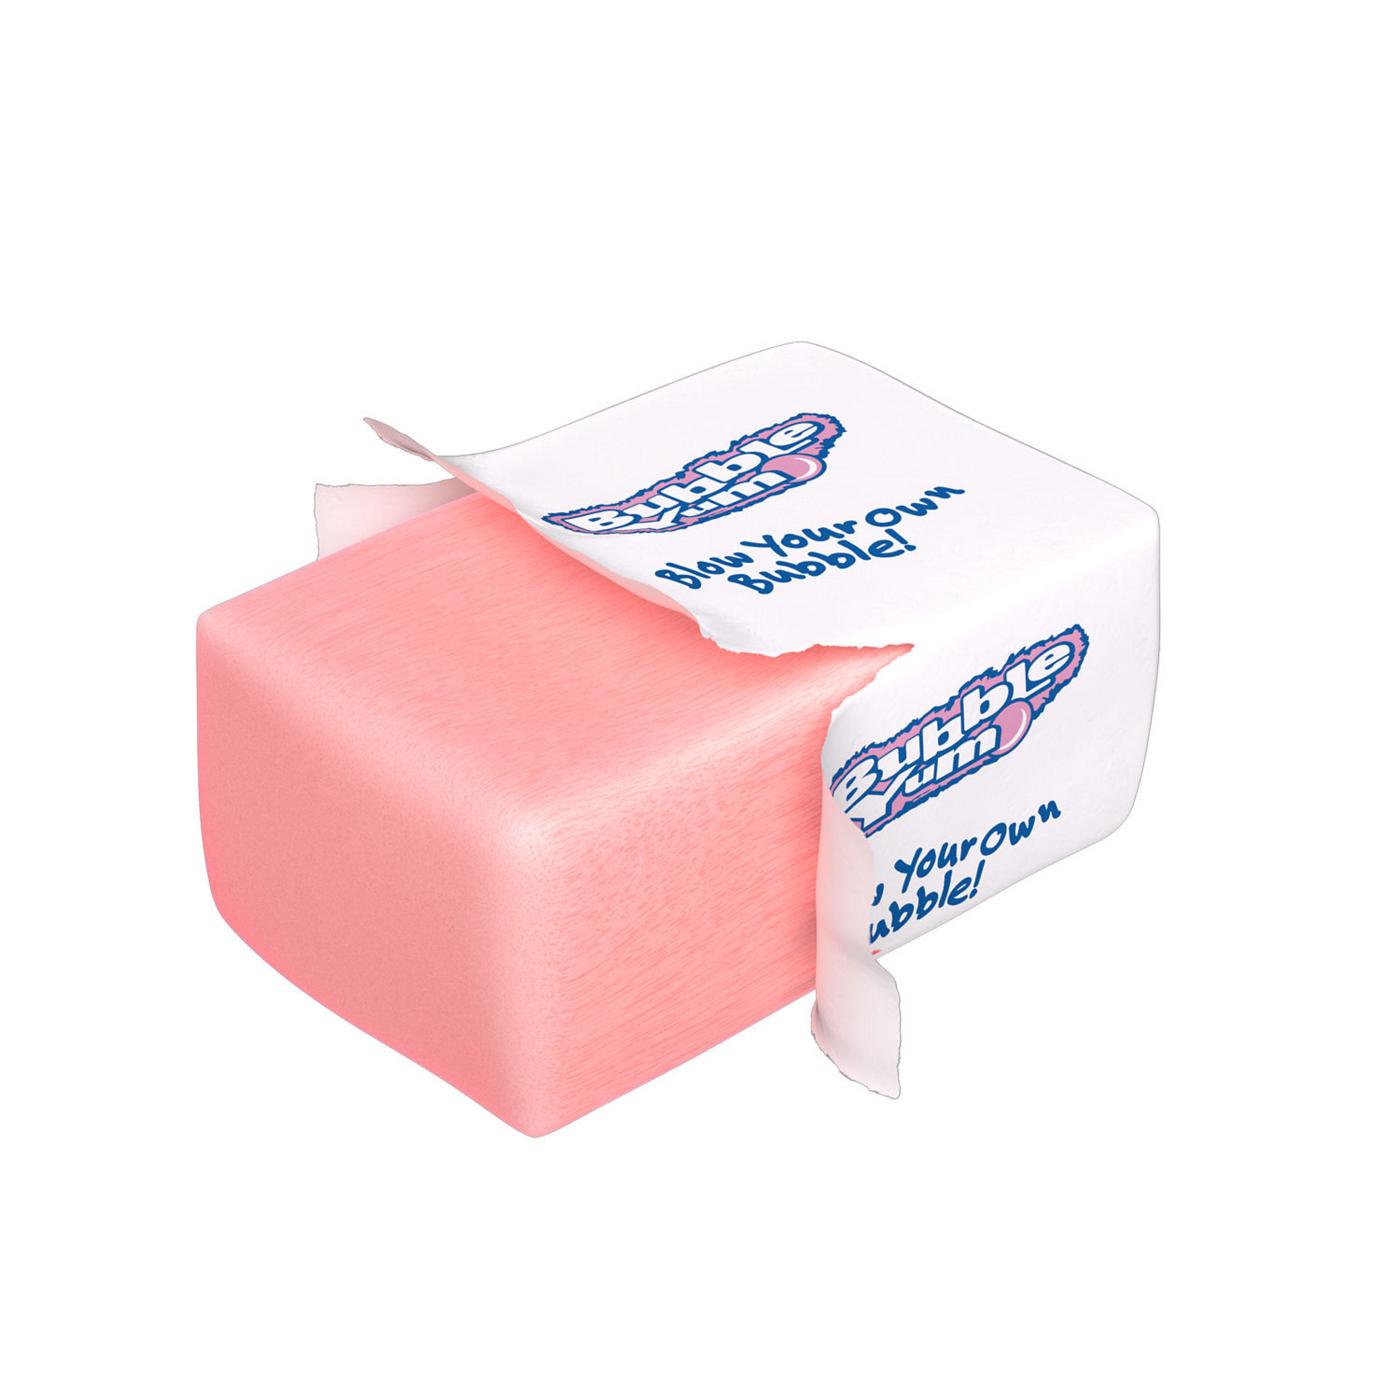 Bubble Yum Bubble Gum - Original Flavor; image 8 of 8